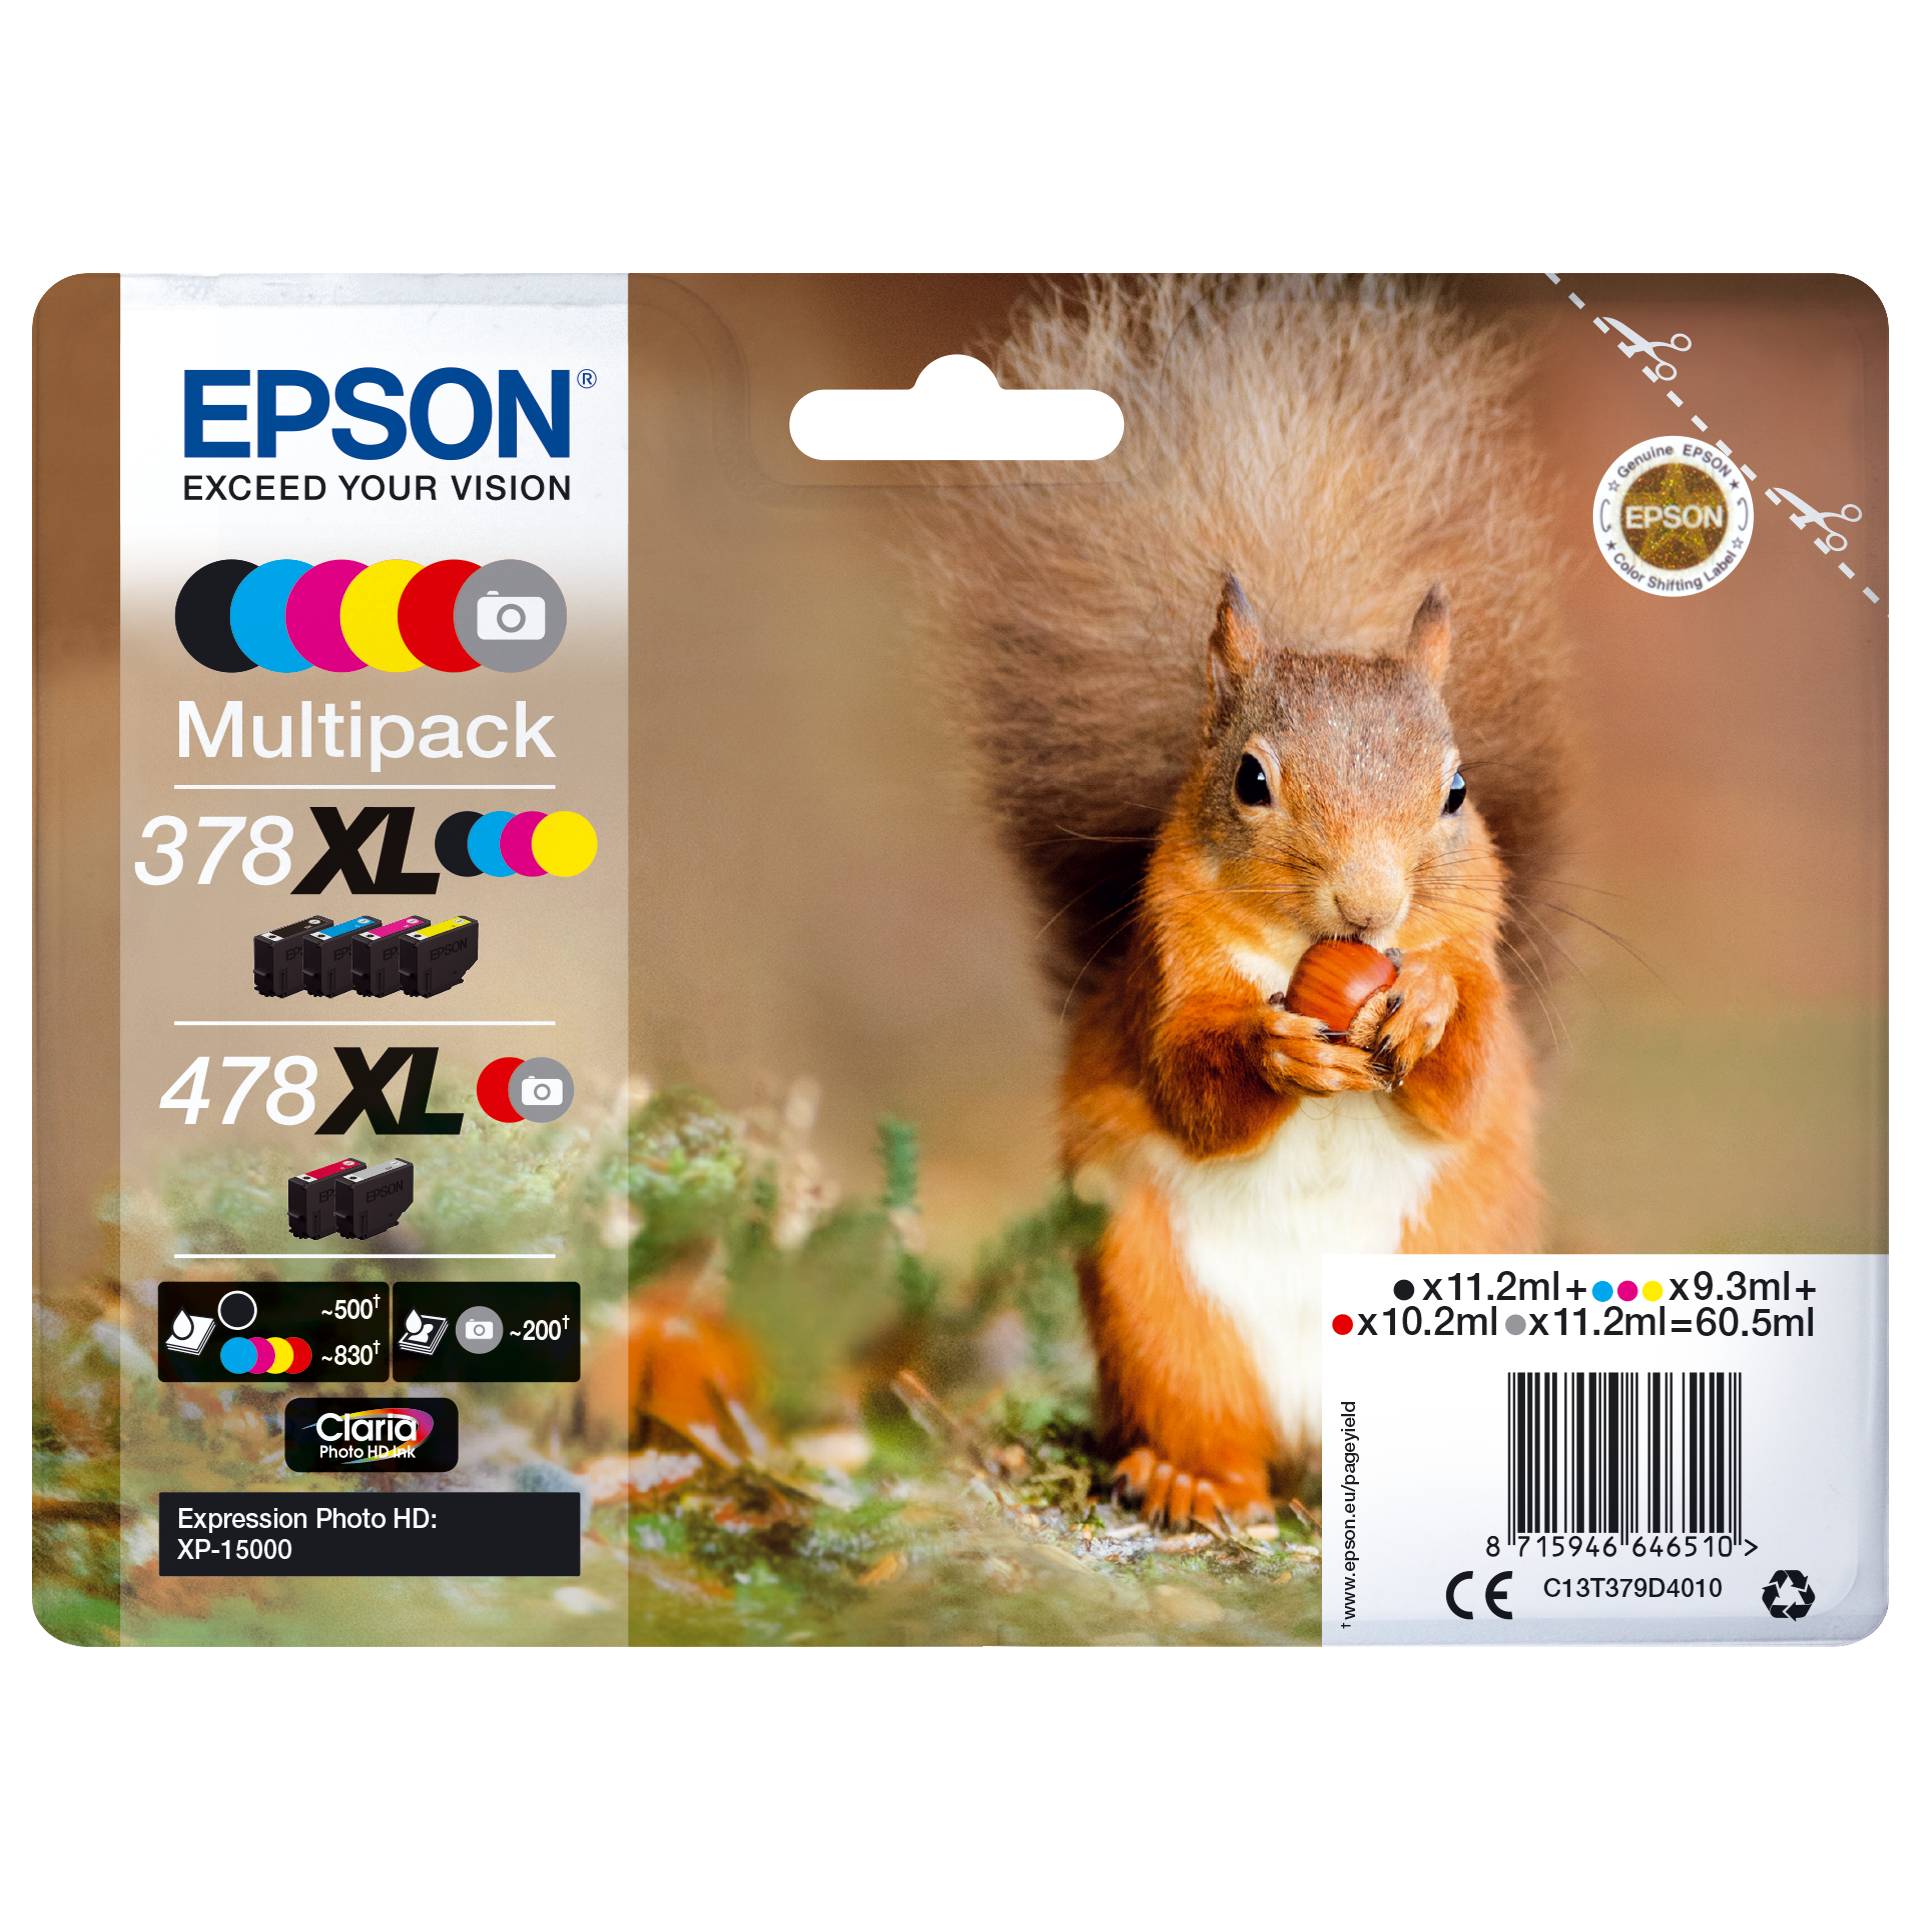 Epson Tinte 378 XL/478 XL Multipack 